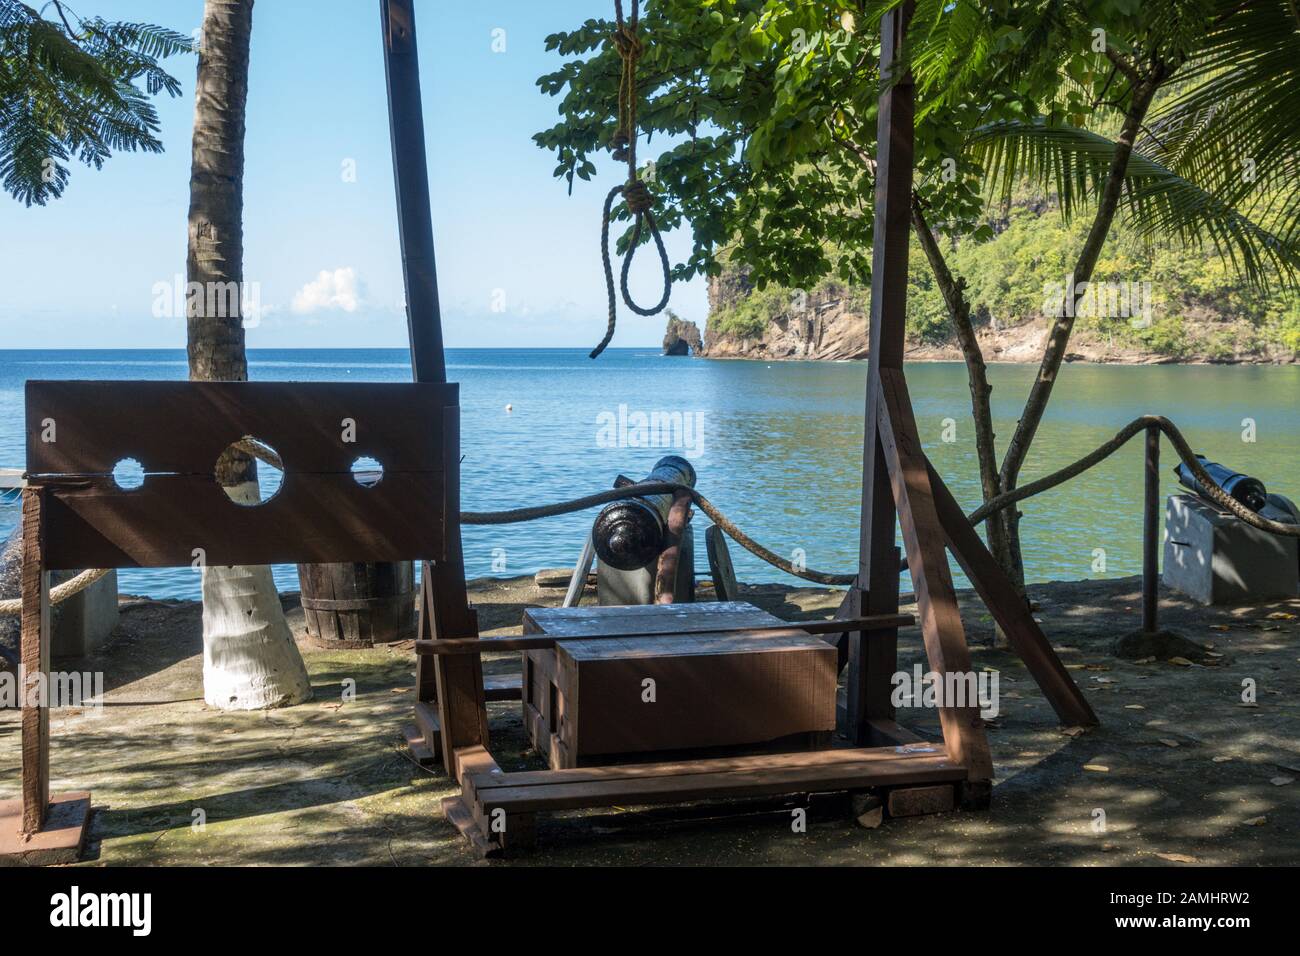 Bahía Wallilabou, conjunto de Piratas del Caribe, San Vicente y las Granadinas, Islas de Barlovento, Caribe, Indias Occidentales Foto de stock